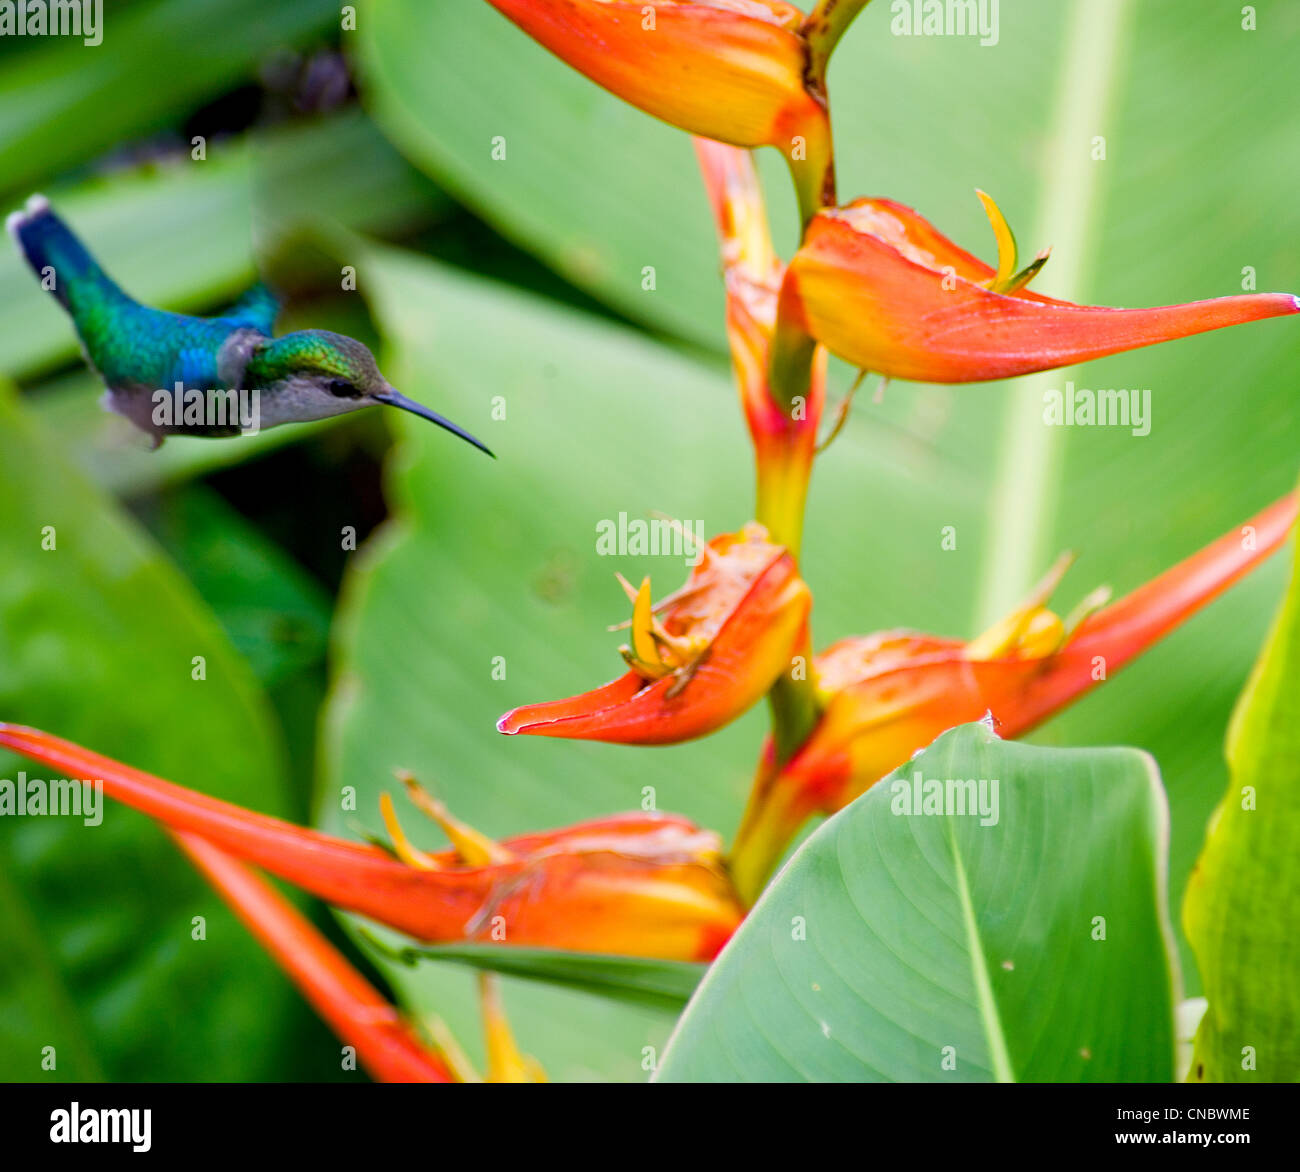 Fauna De Costa Ricas Fotos E Im Genes De Stock Alamy